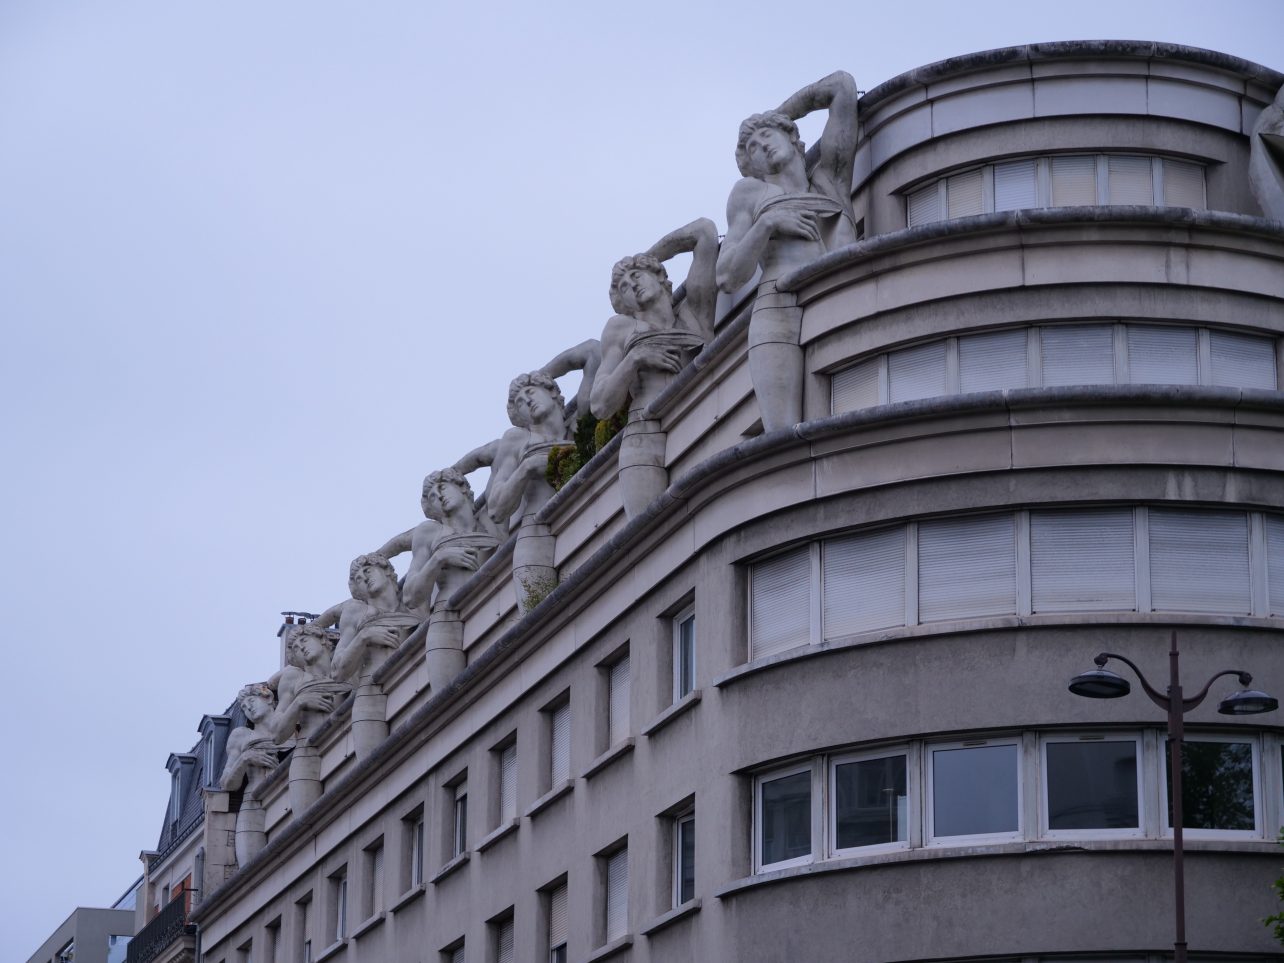 La façade de commissariat la plus artistique et insolite de Paris